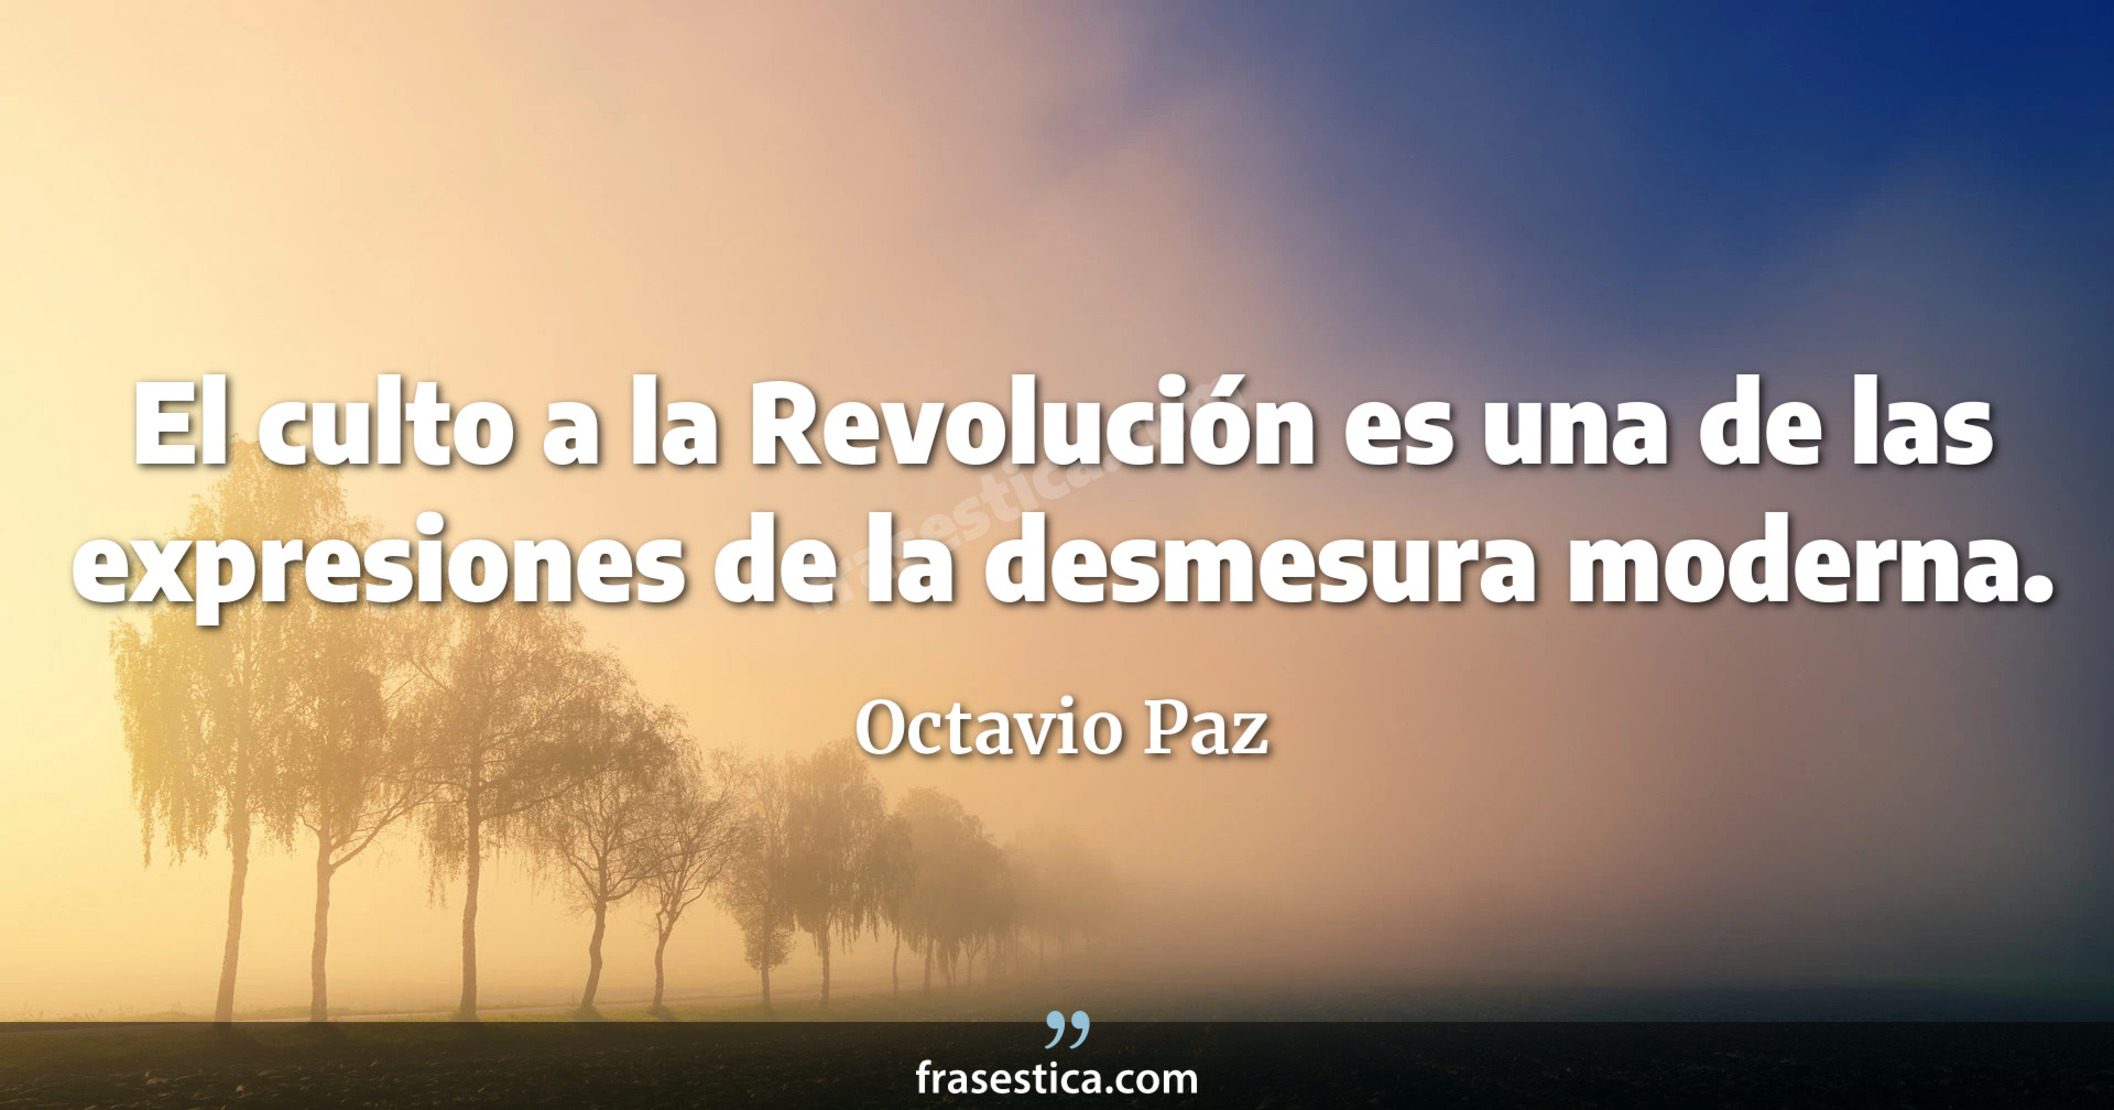 El culto a la Revolución es una de las expresiones de la desmesura moderna. - Octavio Paz